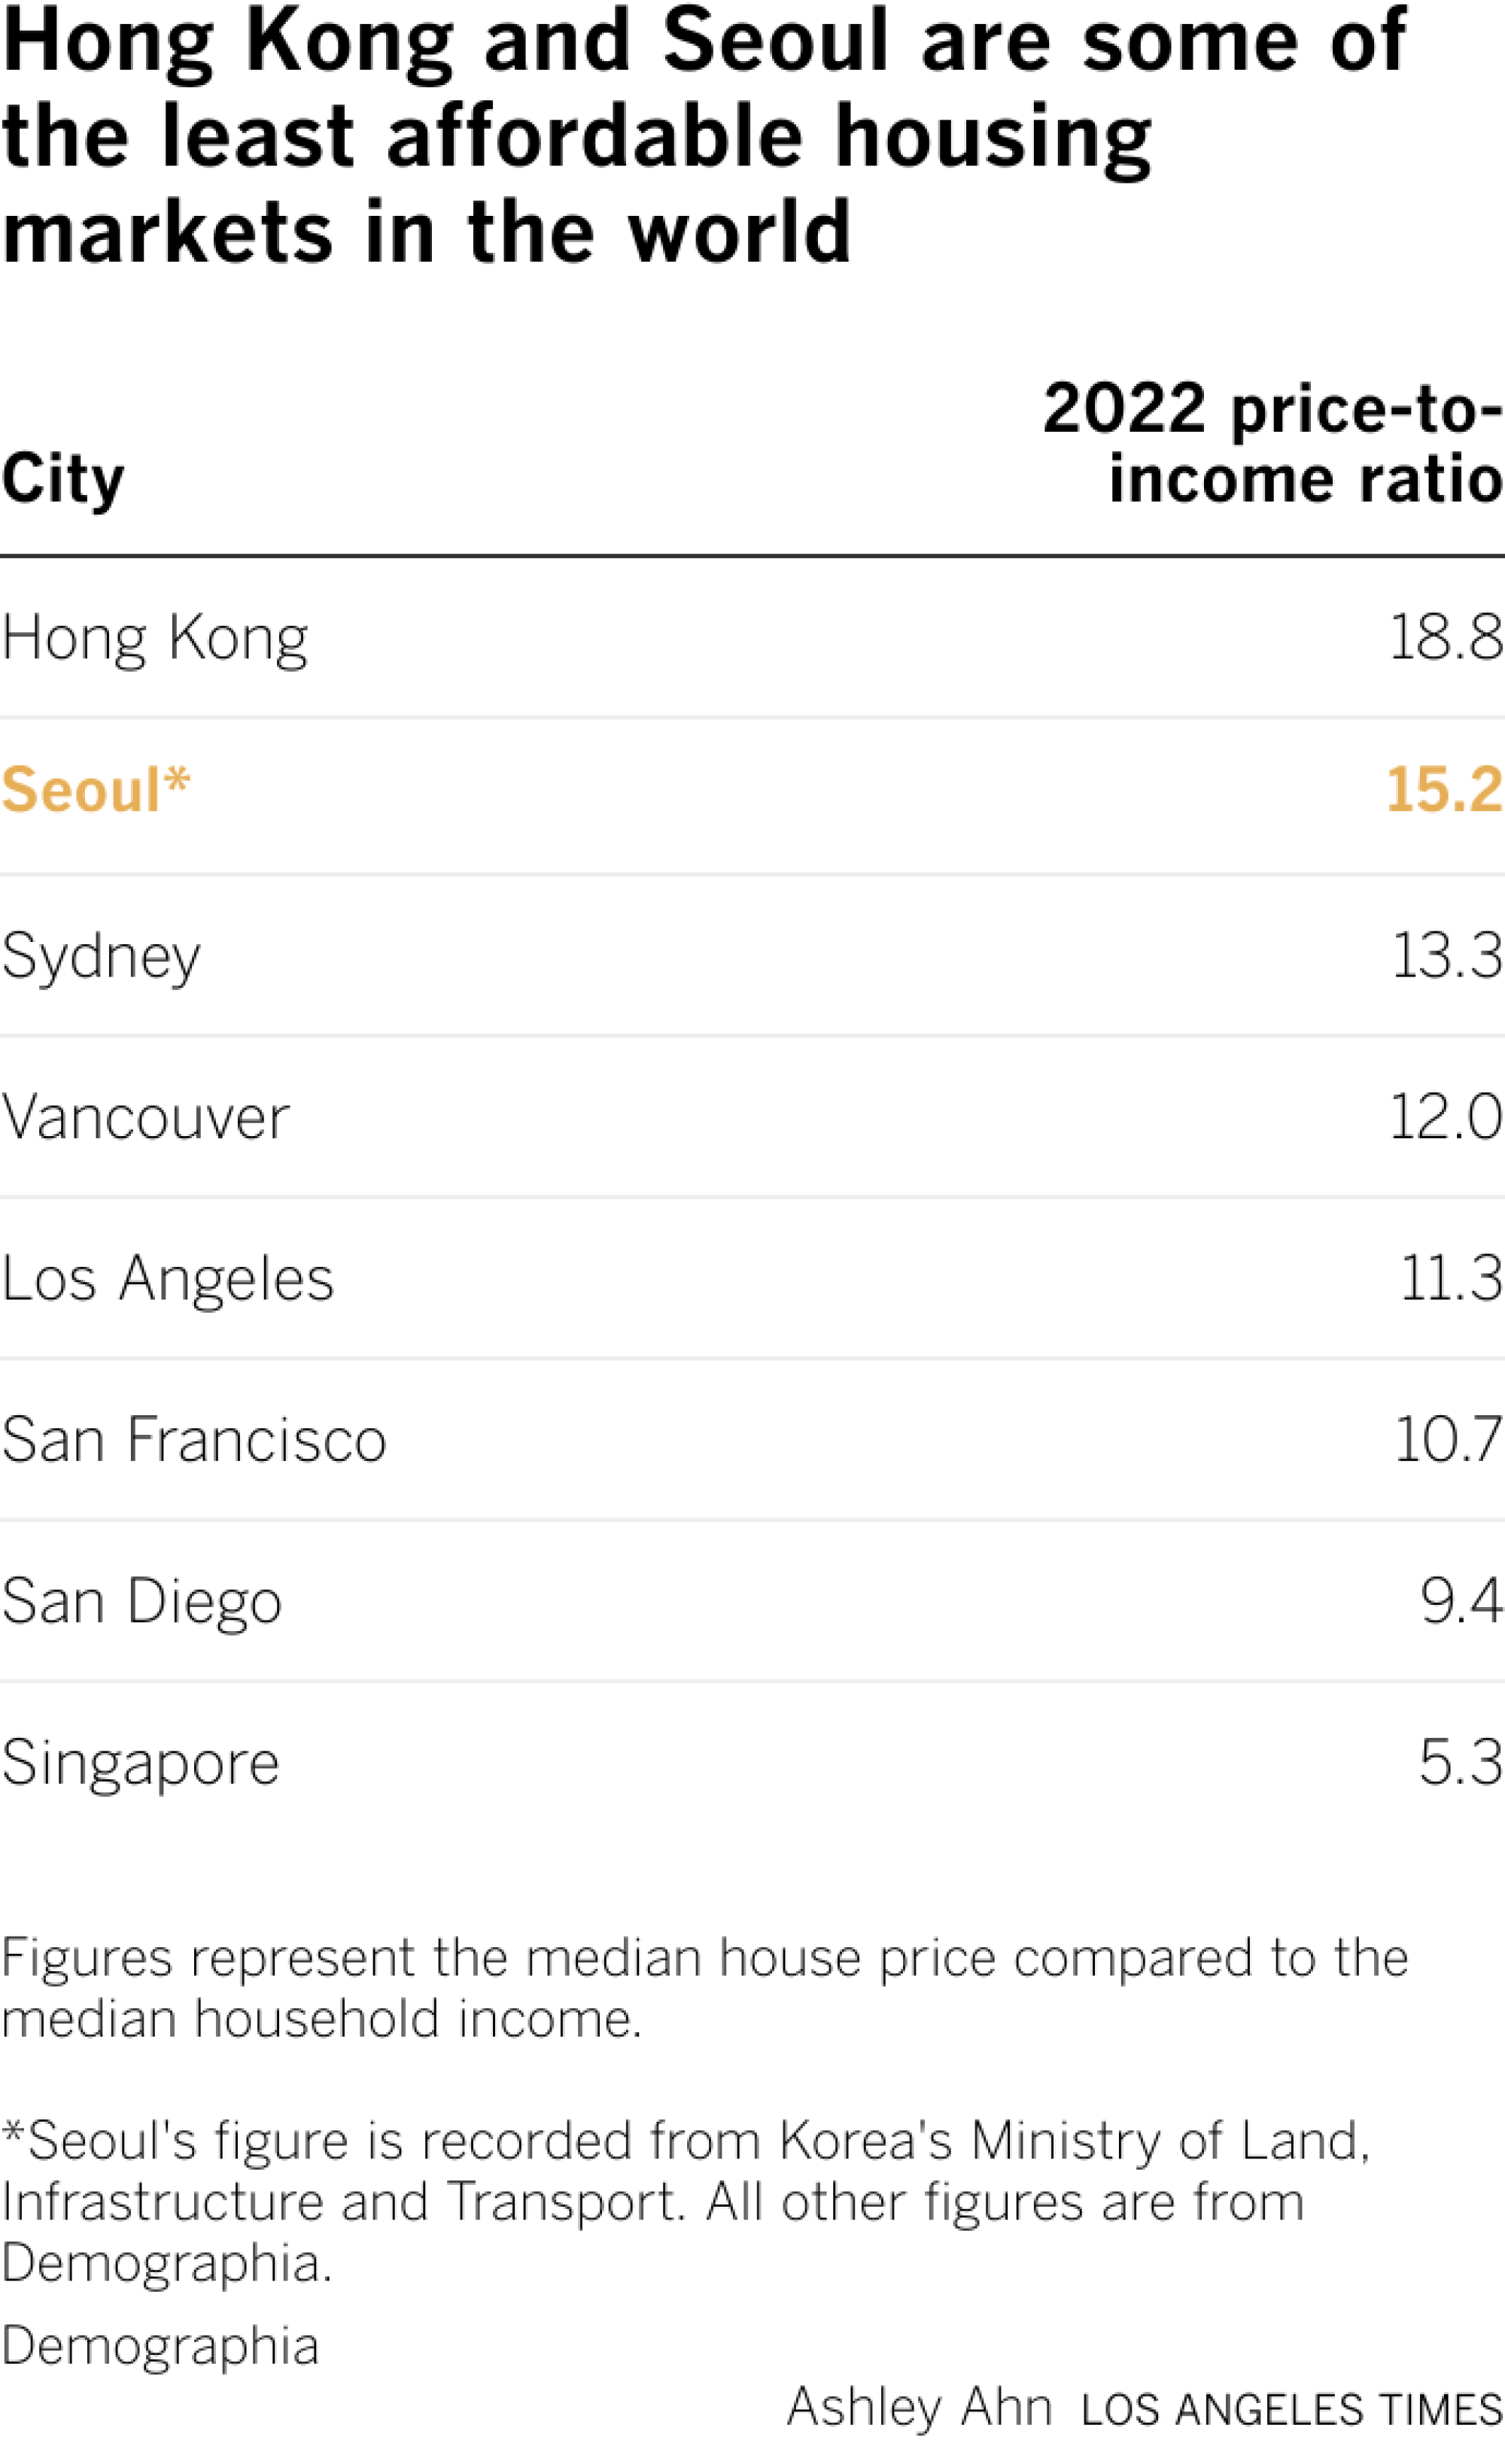 香港和首尔是世界上最难以负担的住房市场之一